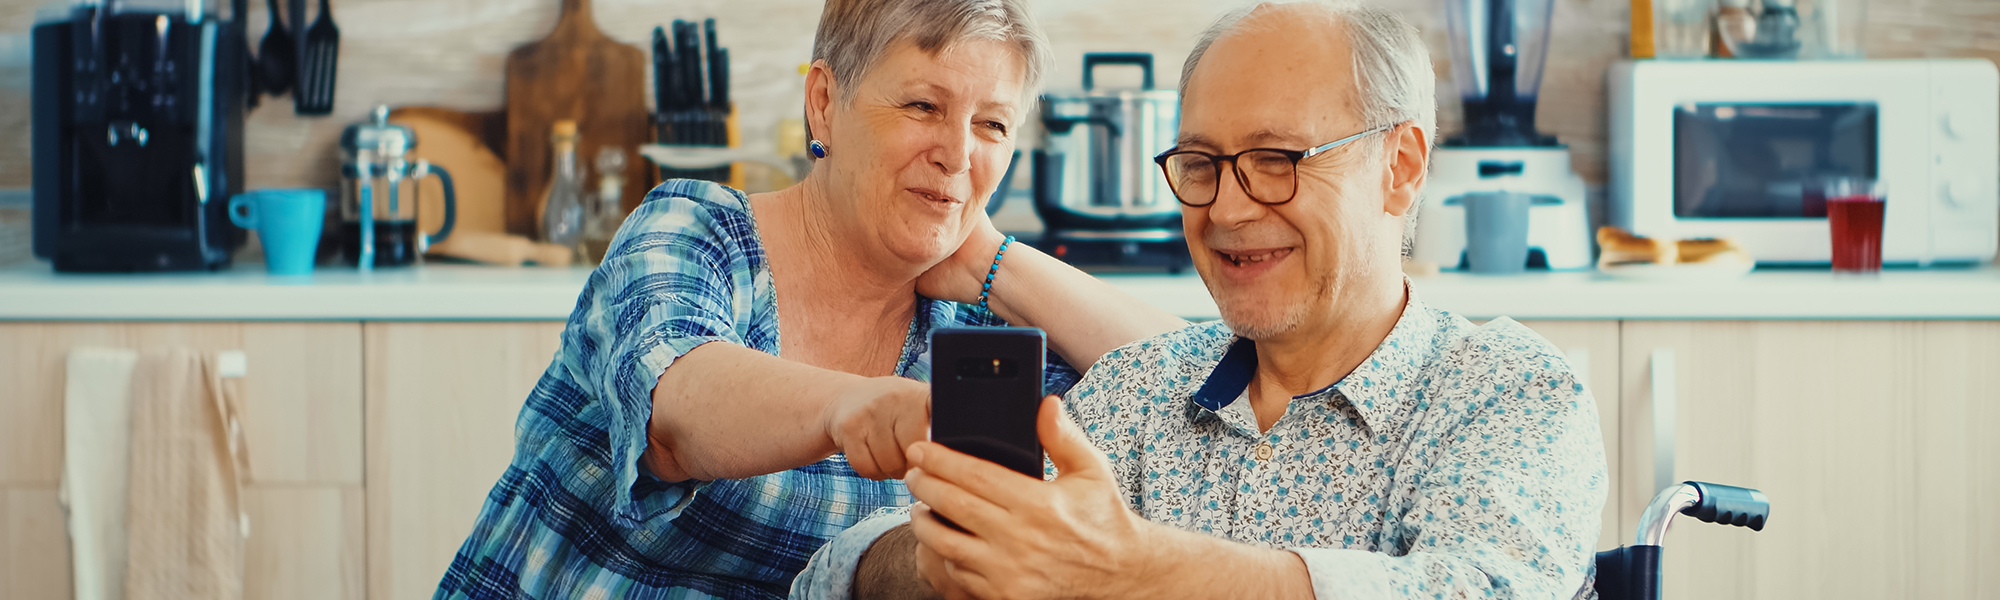 Lächelnde Senioren und ihr Ehemann im Rollstuhl nutzen Smartphone in der Küche